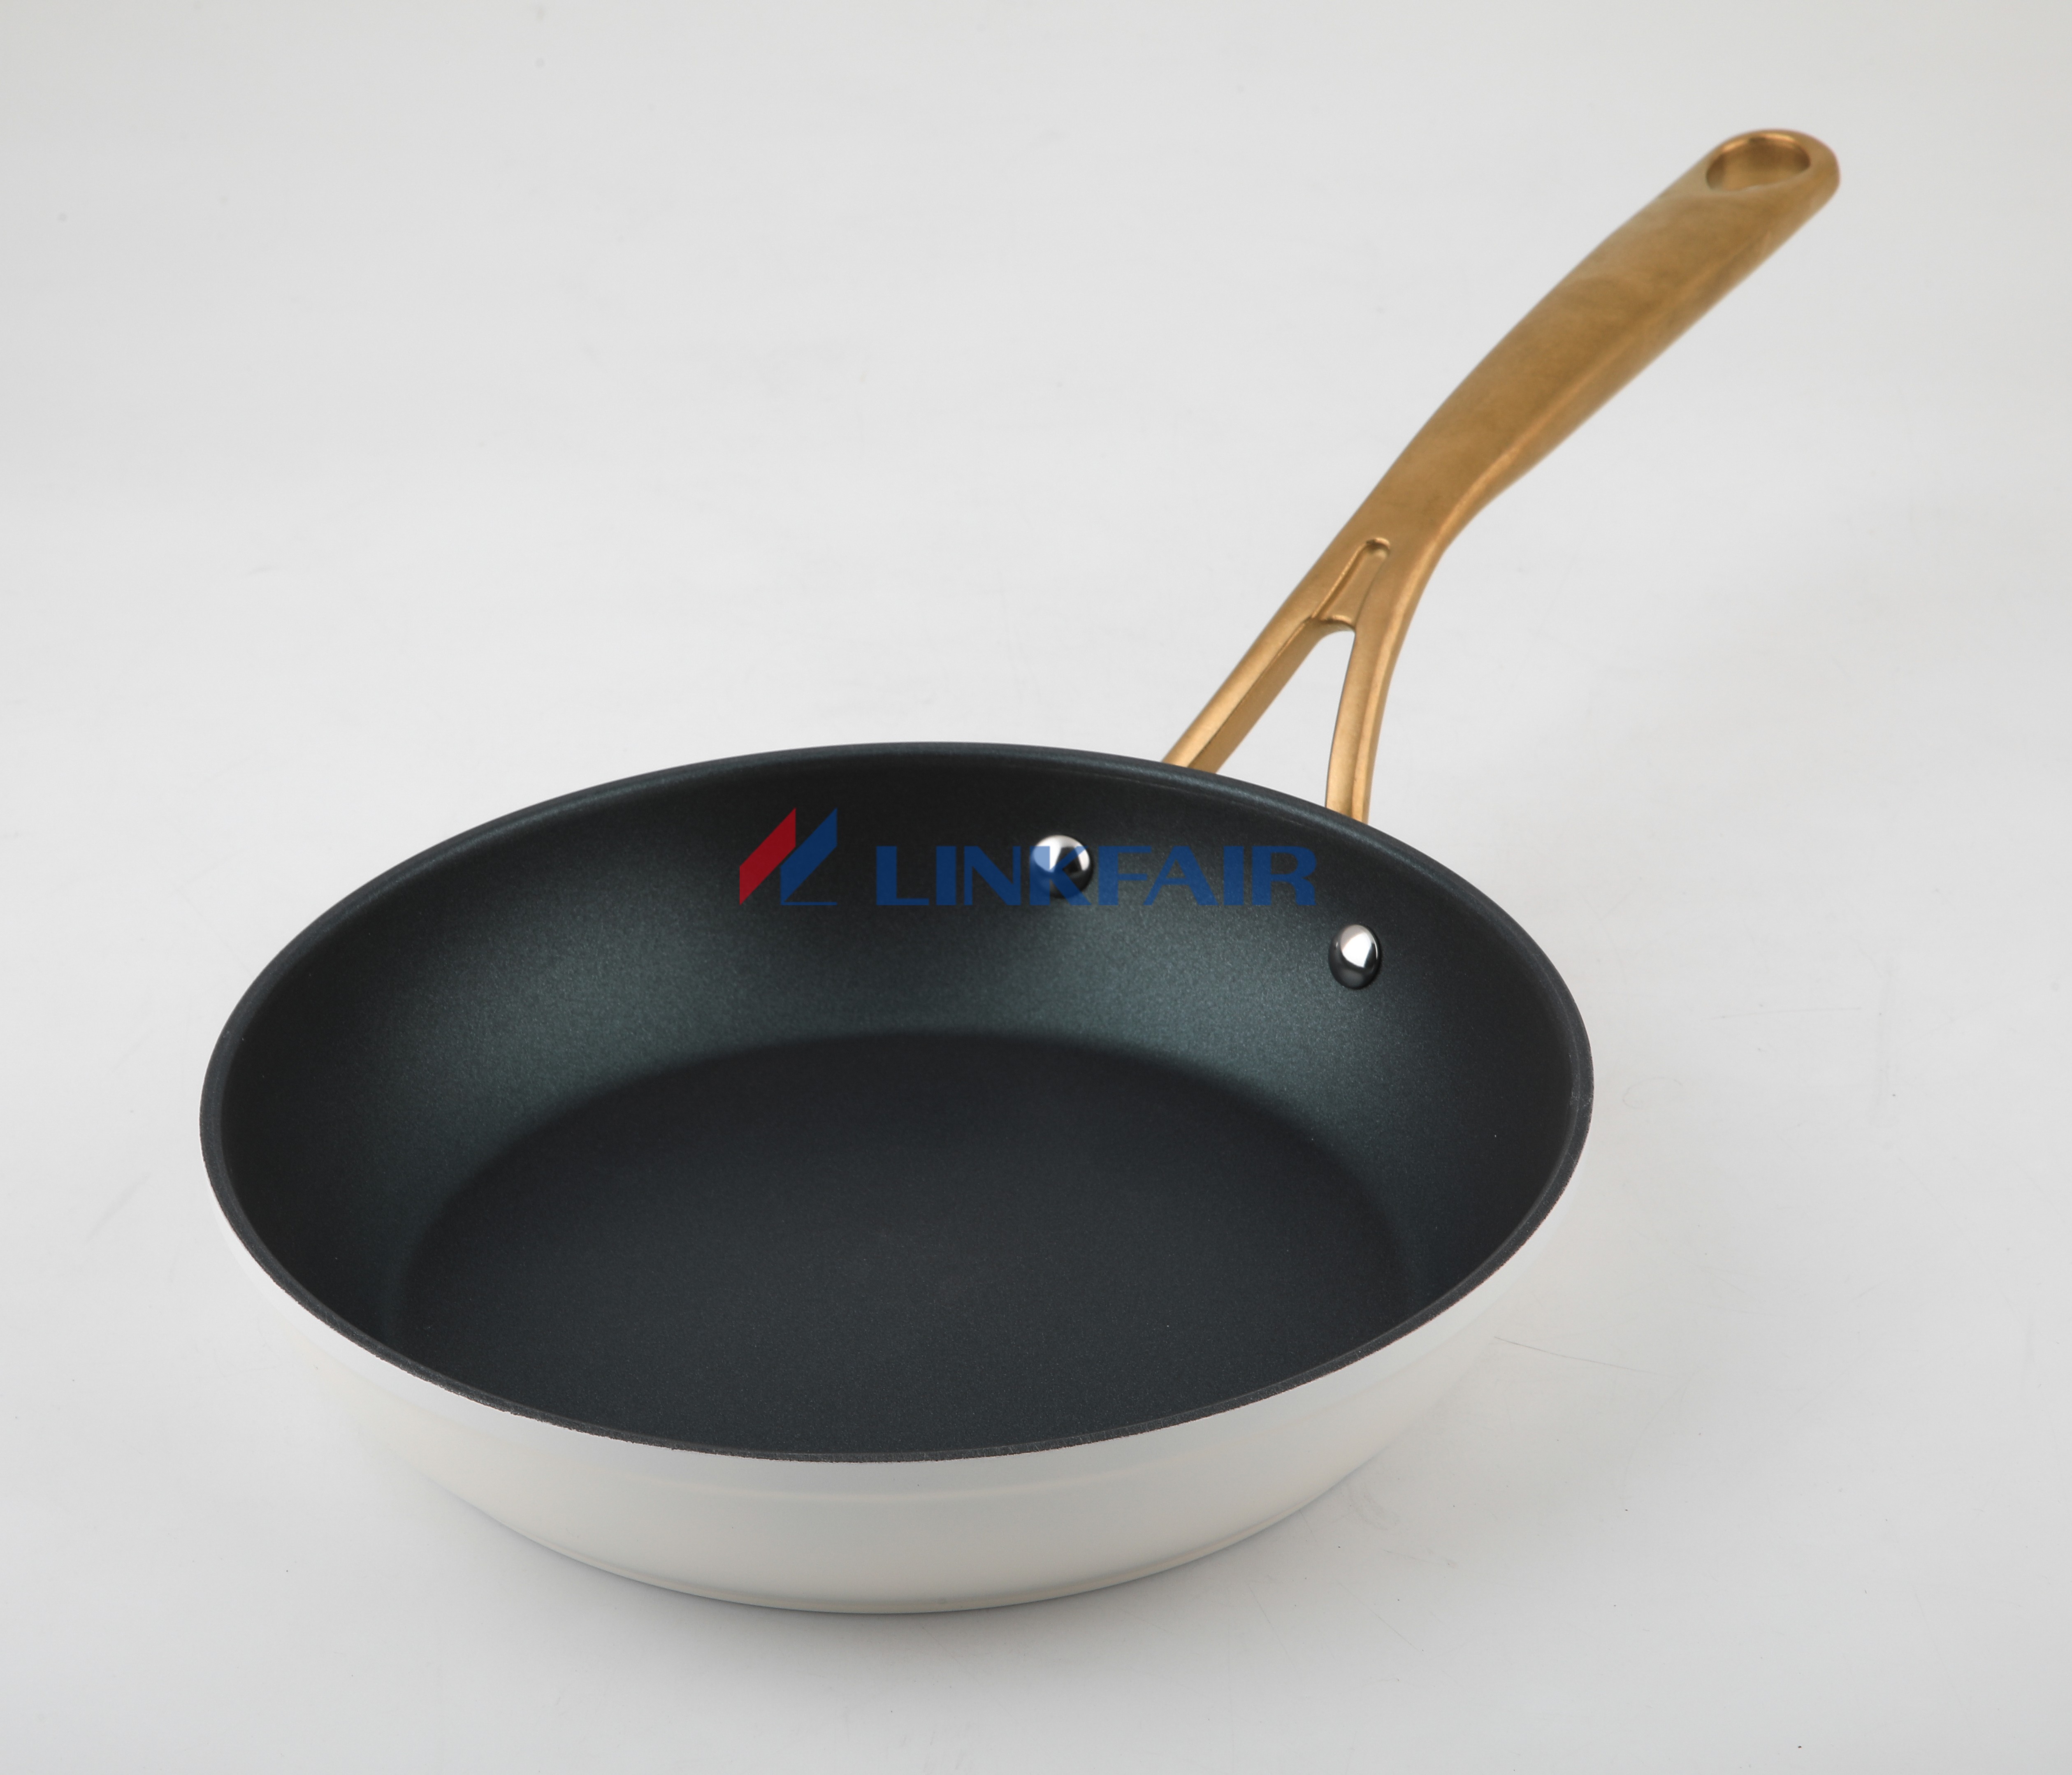 Ceramic Non-Stick Omelette Pan